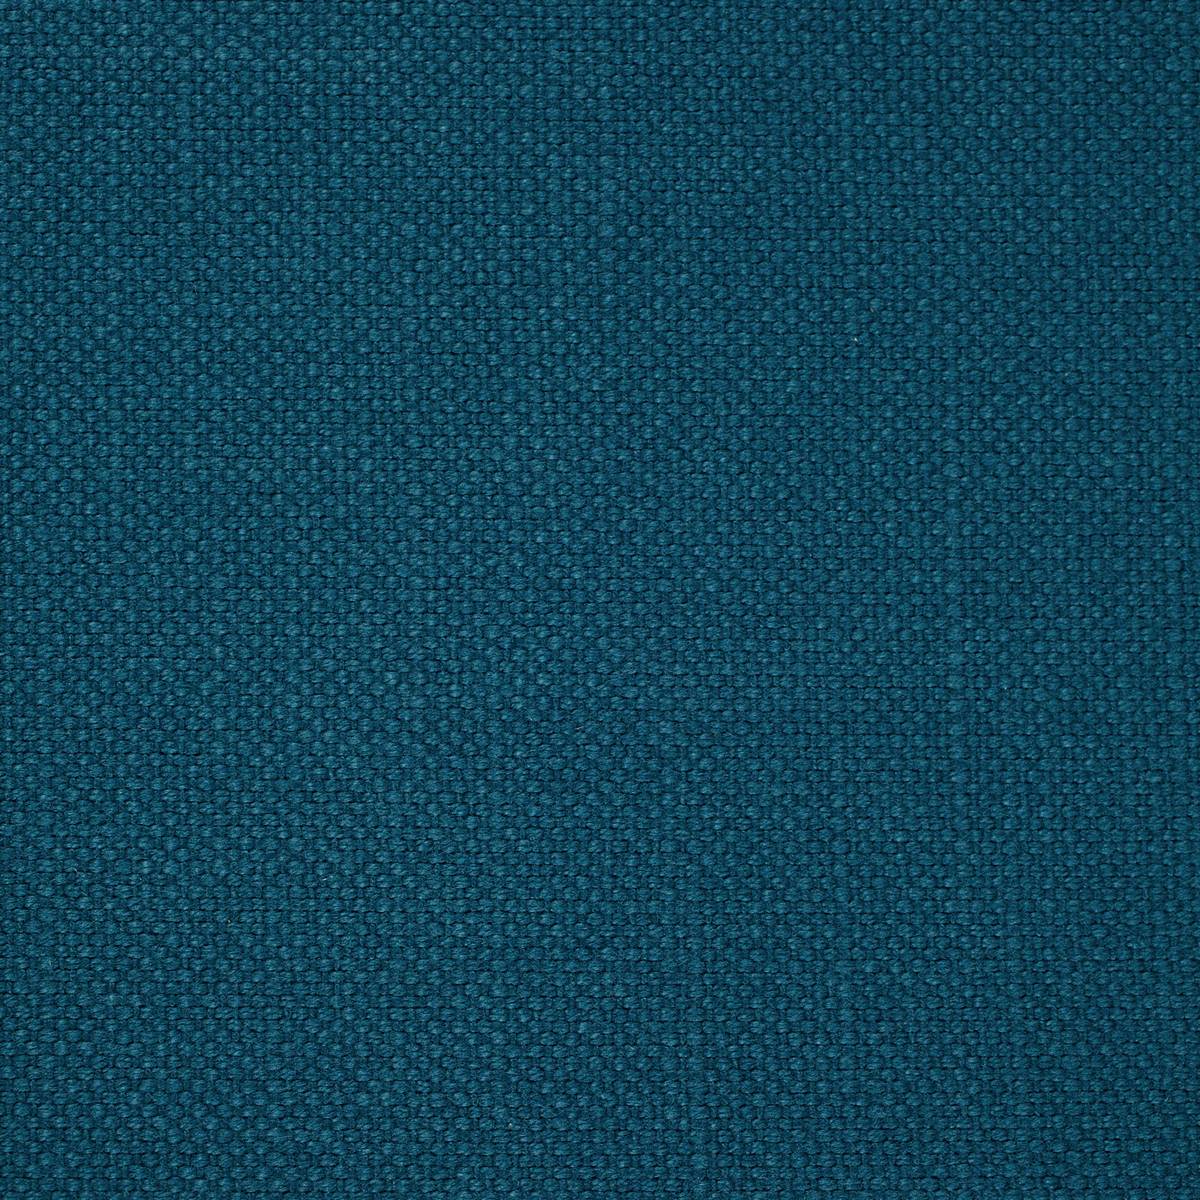 Arley Spruce Fabric by Sanderson